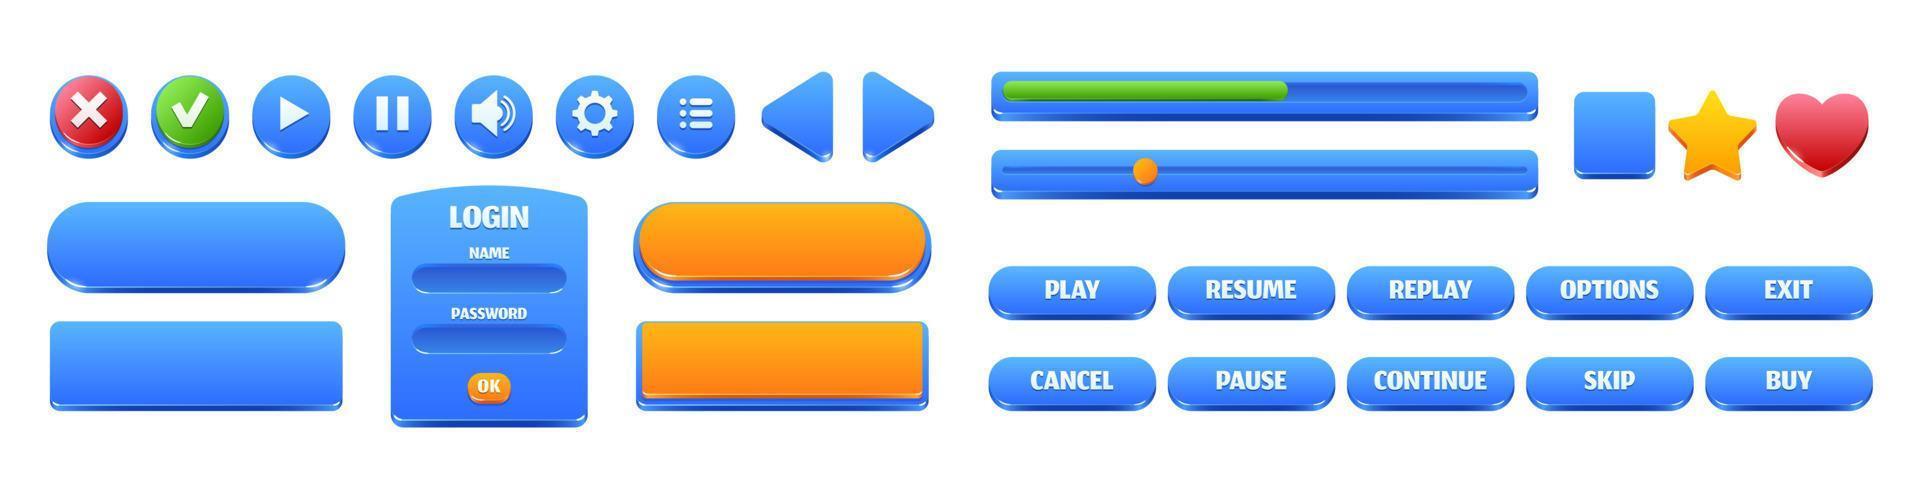 botões e molduras azuis brilhantes para interface de jogo vetor